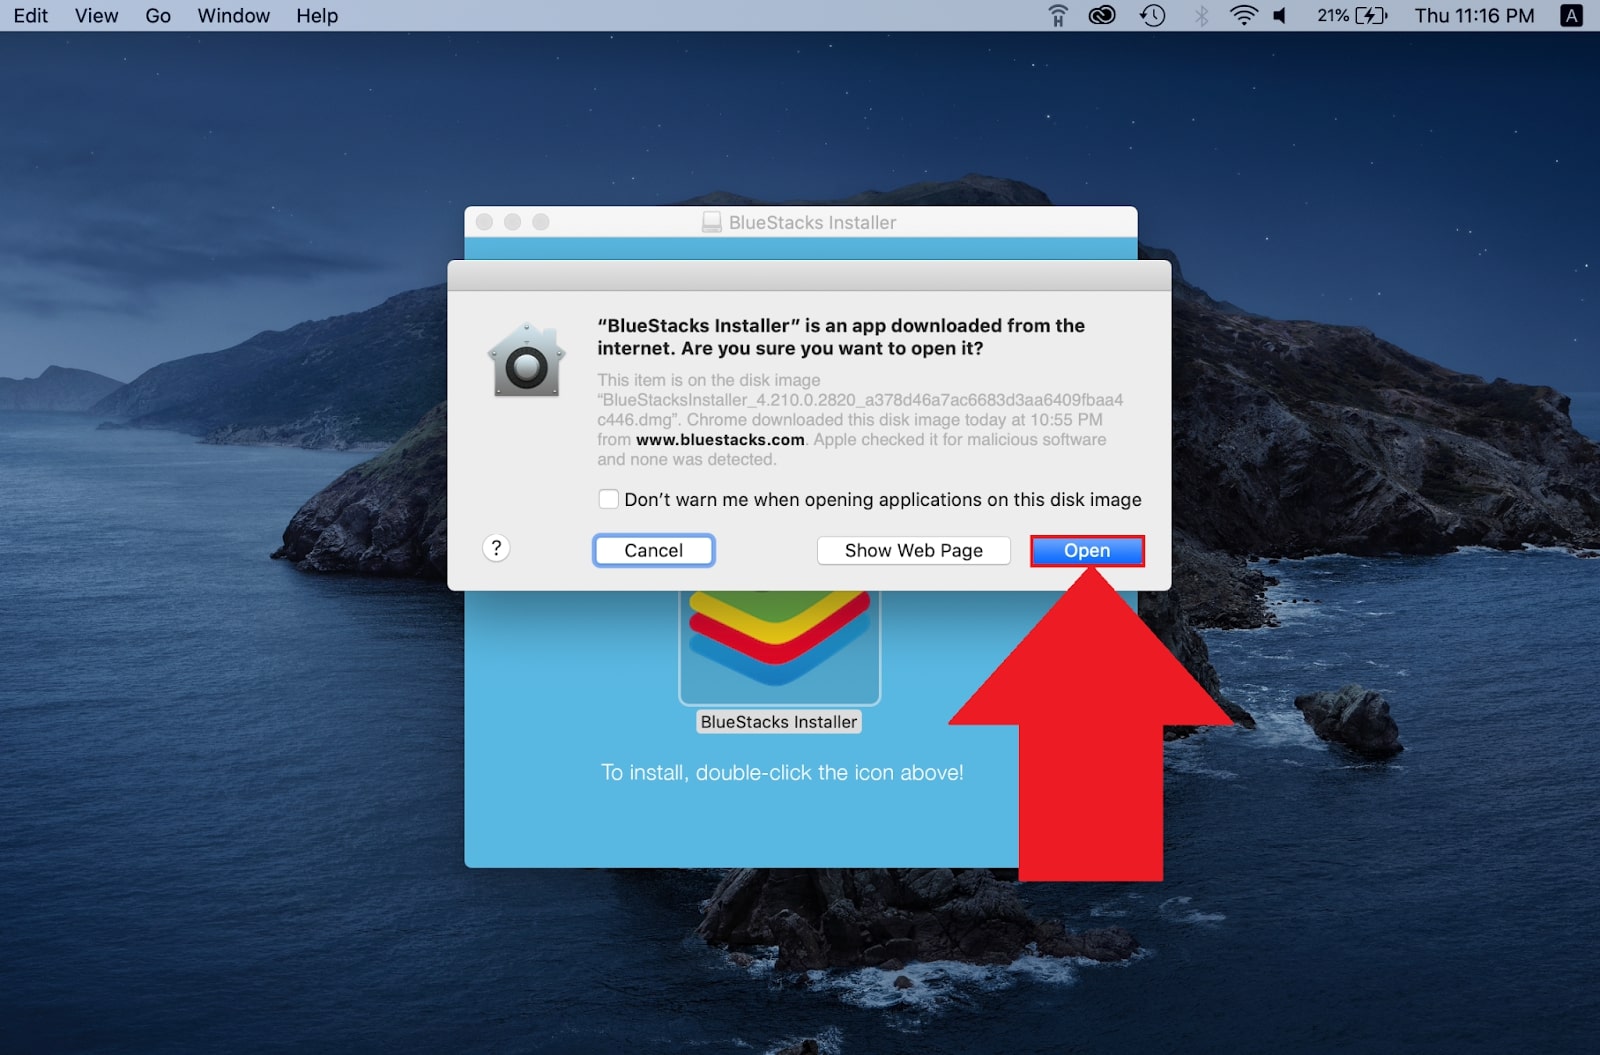 install bluestacks on Mac